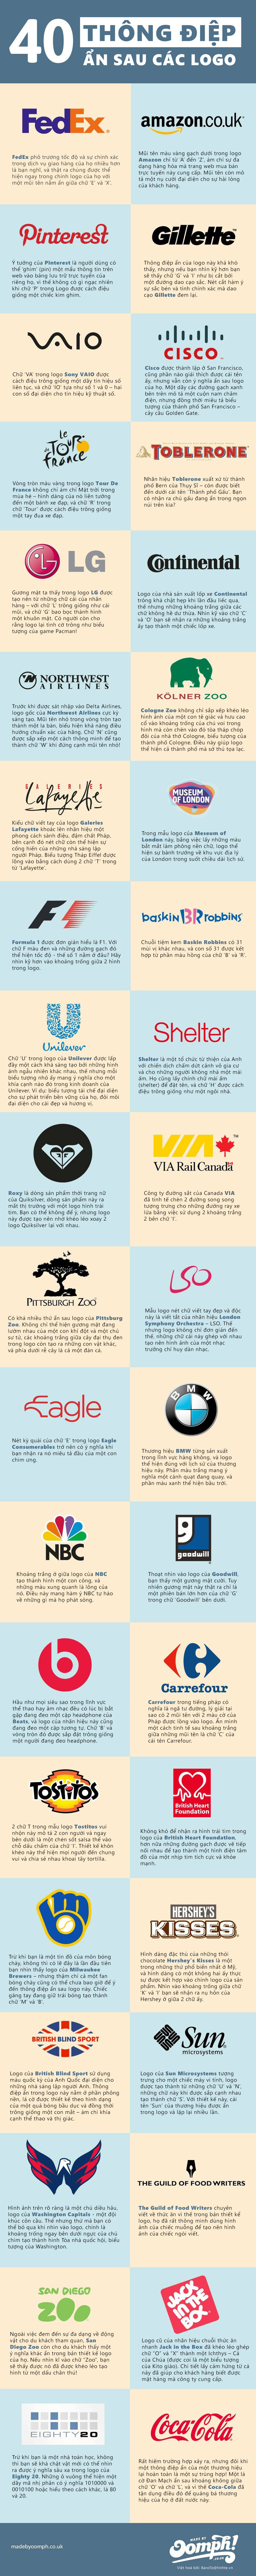 [Infographic] 40 logo ẩn chứa thông điệp doanh nghiệp 5